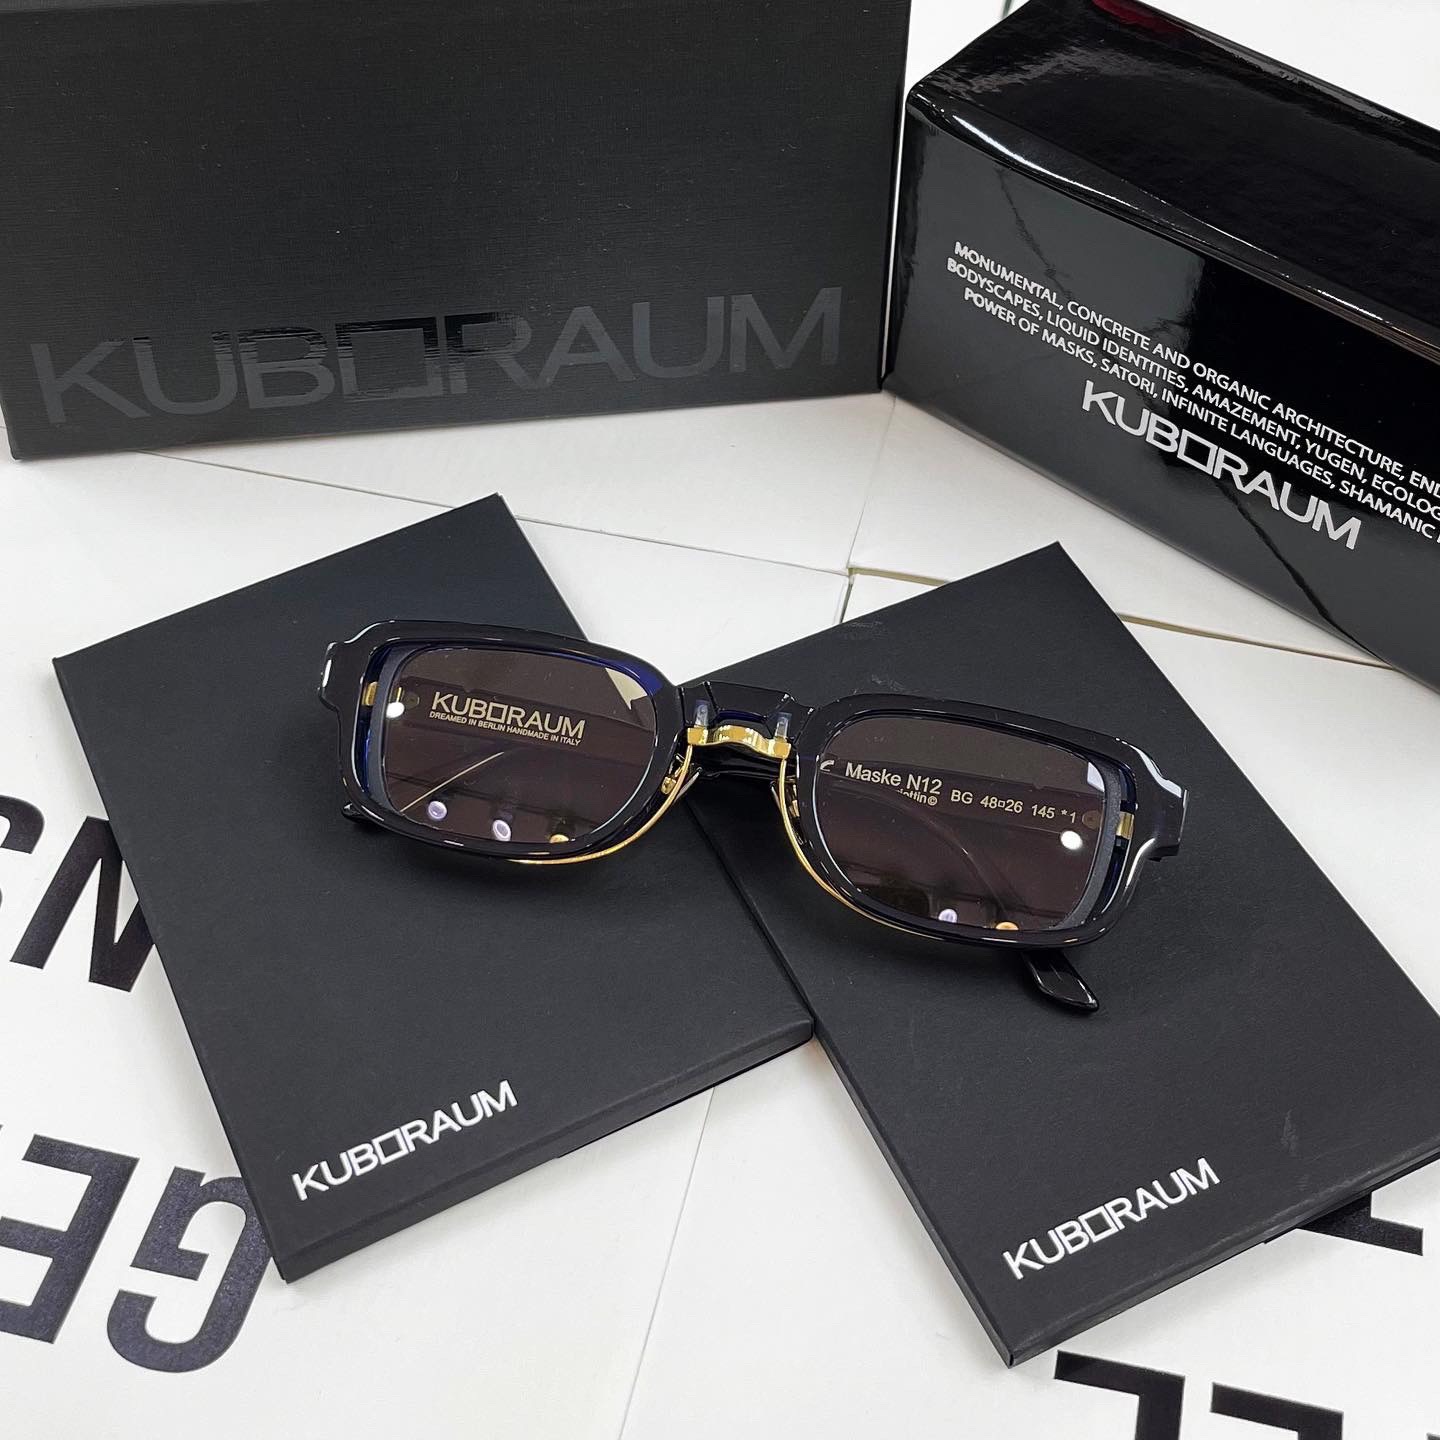 Kuboraum N12 Royal Blue – Uspox - Siêu thị giày thể thao chính hãng